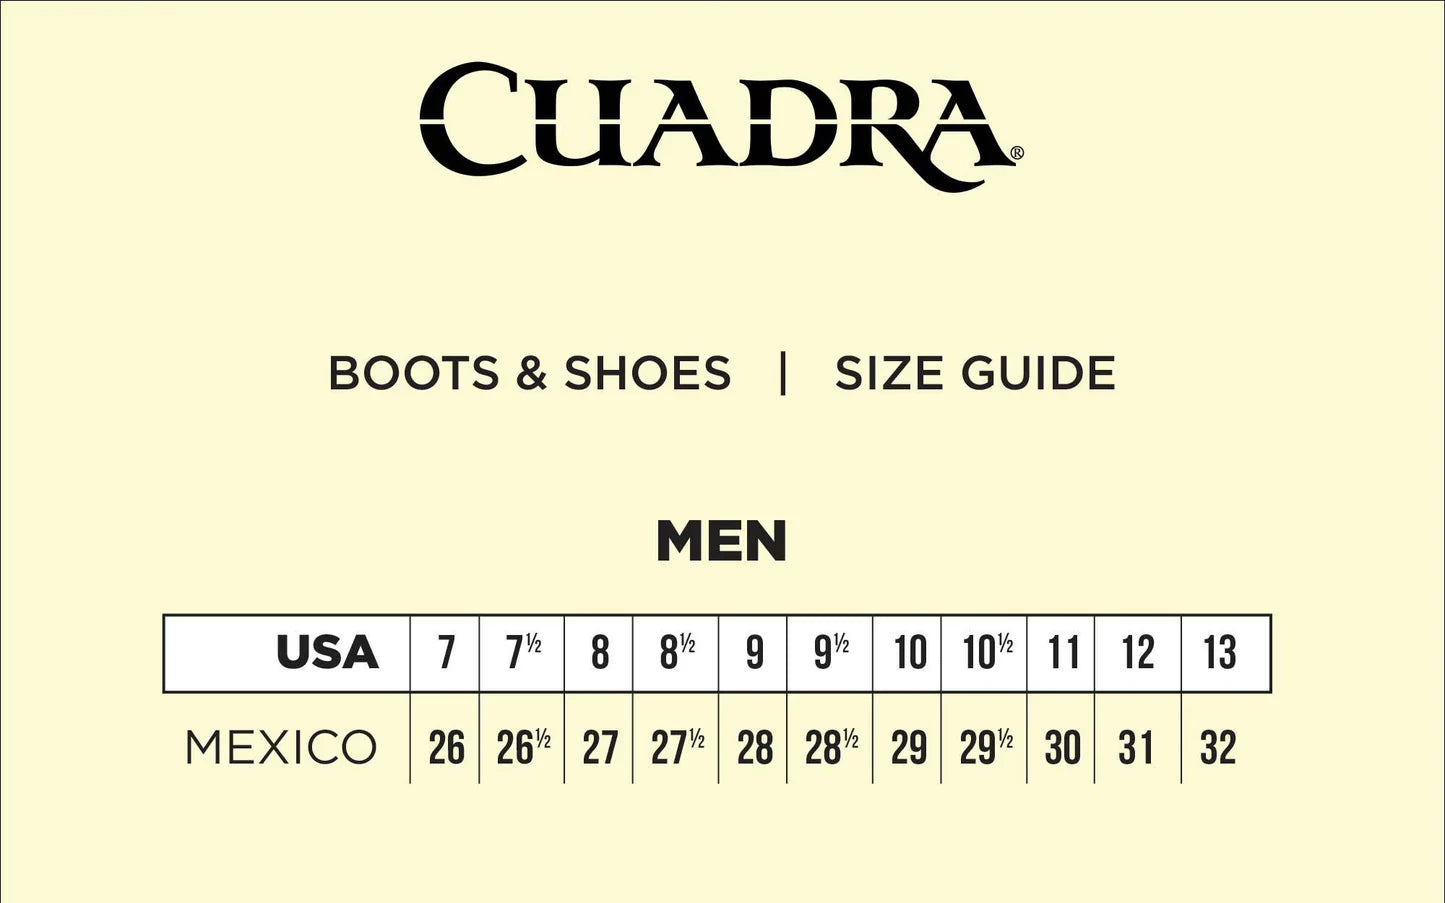 cuadra_sizeguide_boots_men_jpg_4d297ad8-e06e-4c47-a4d3-dc42f384b1cd.webp